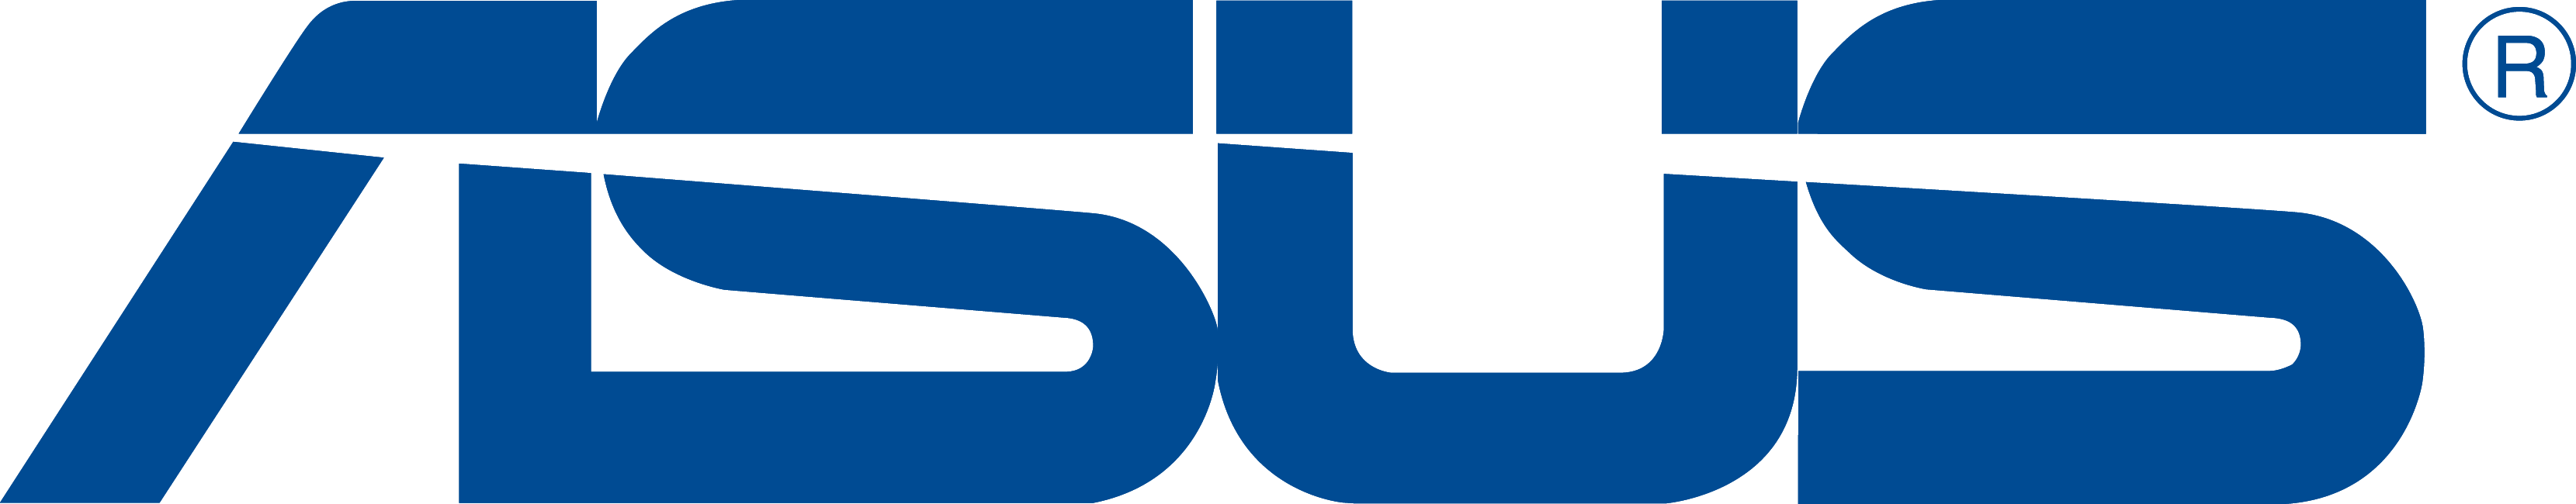 Asus Logo [asus.com] png